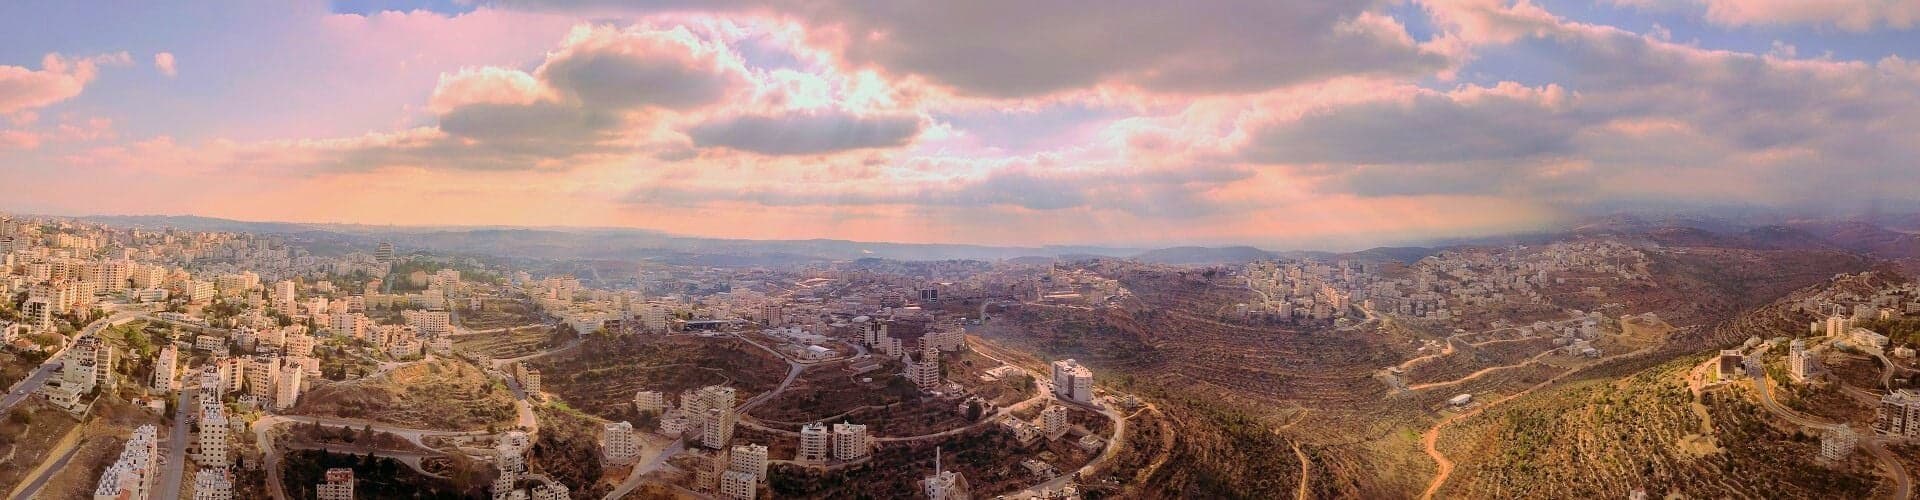 Ramallah Skyline